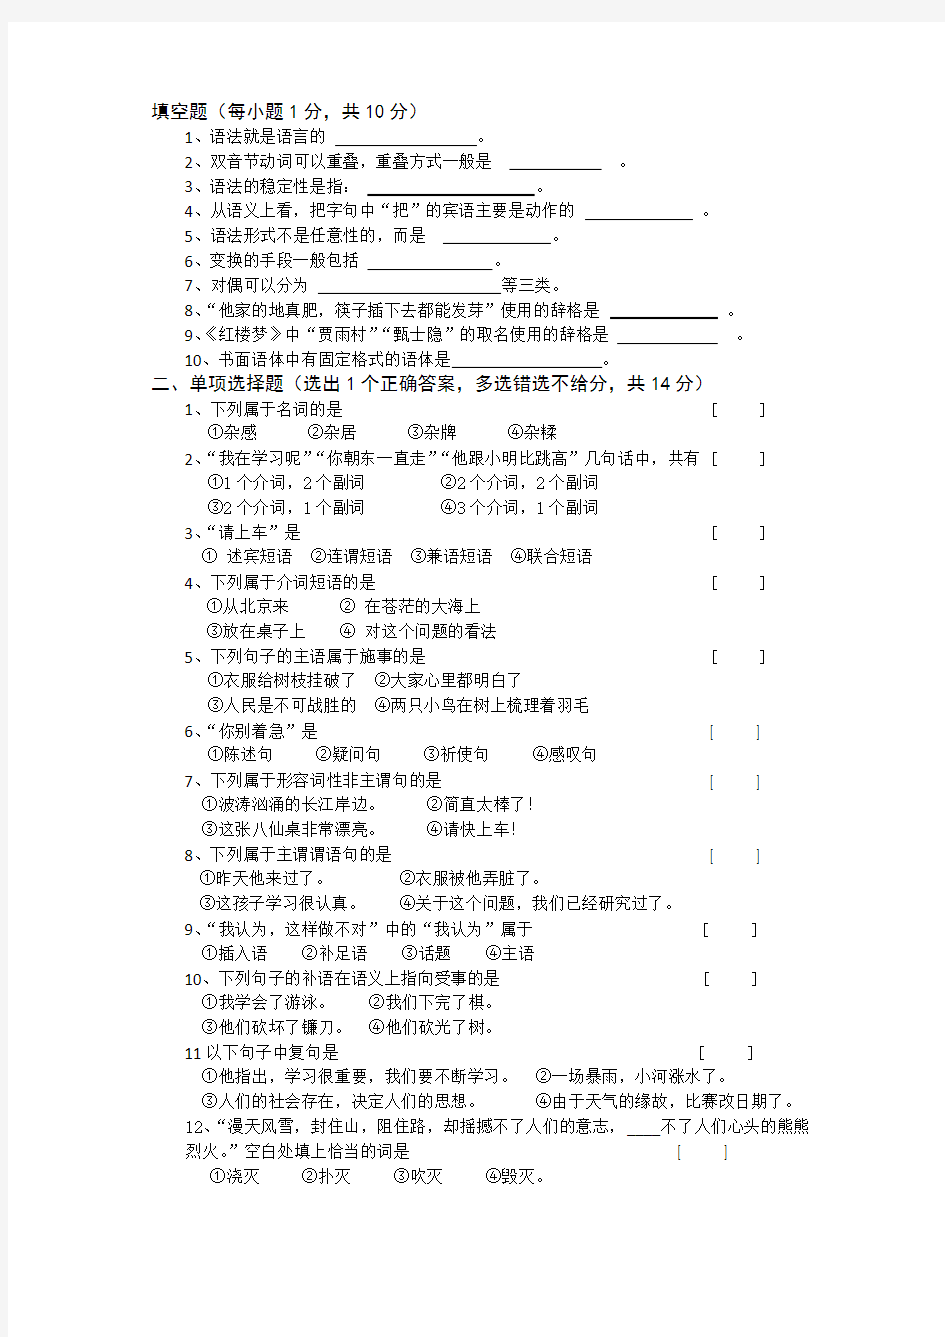 2019年春河北师范大学现代汉语考试题考试卷及答案解析(四)【最新版】